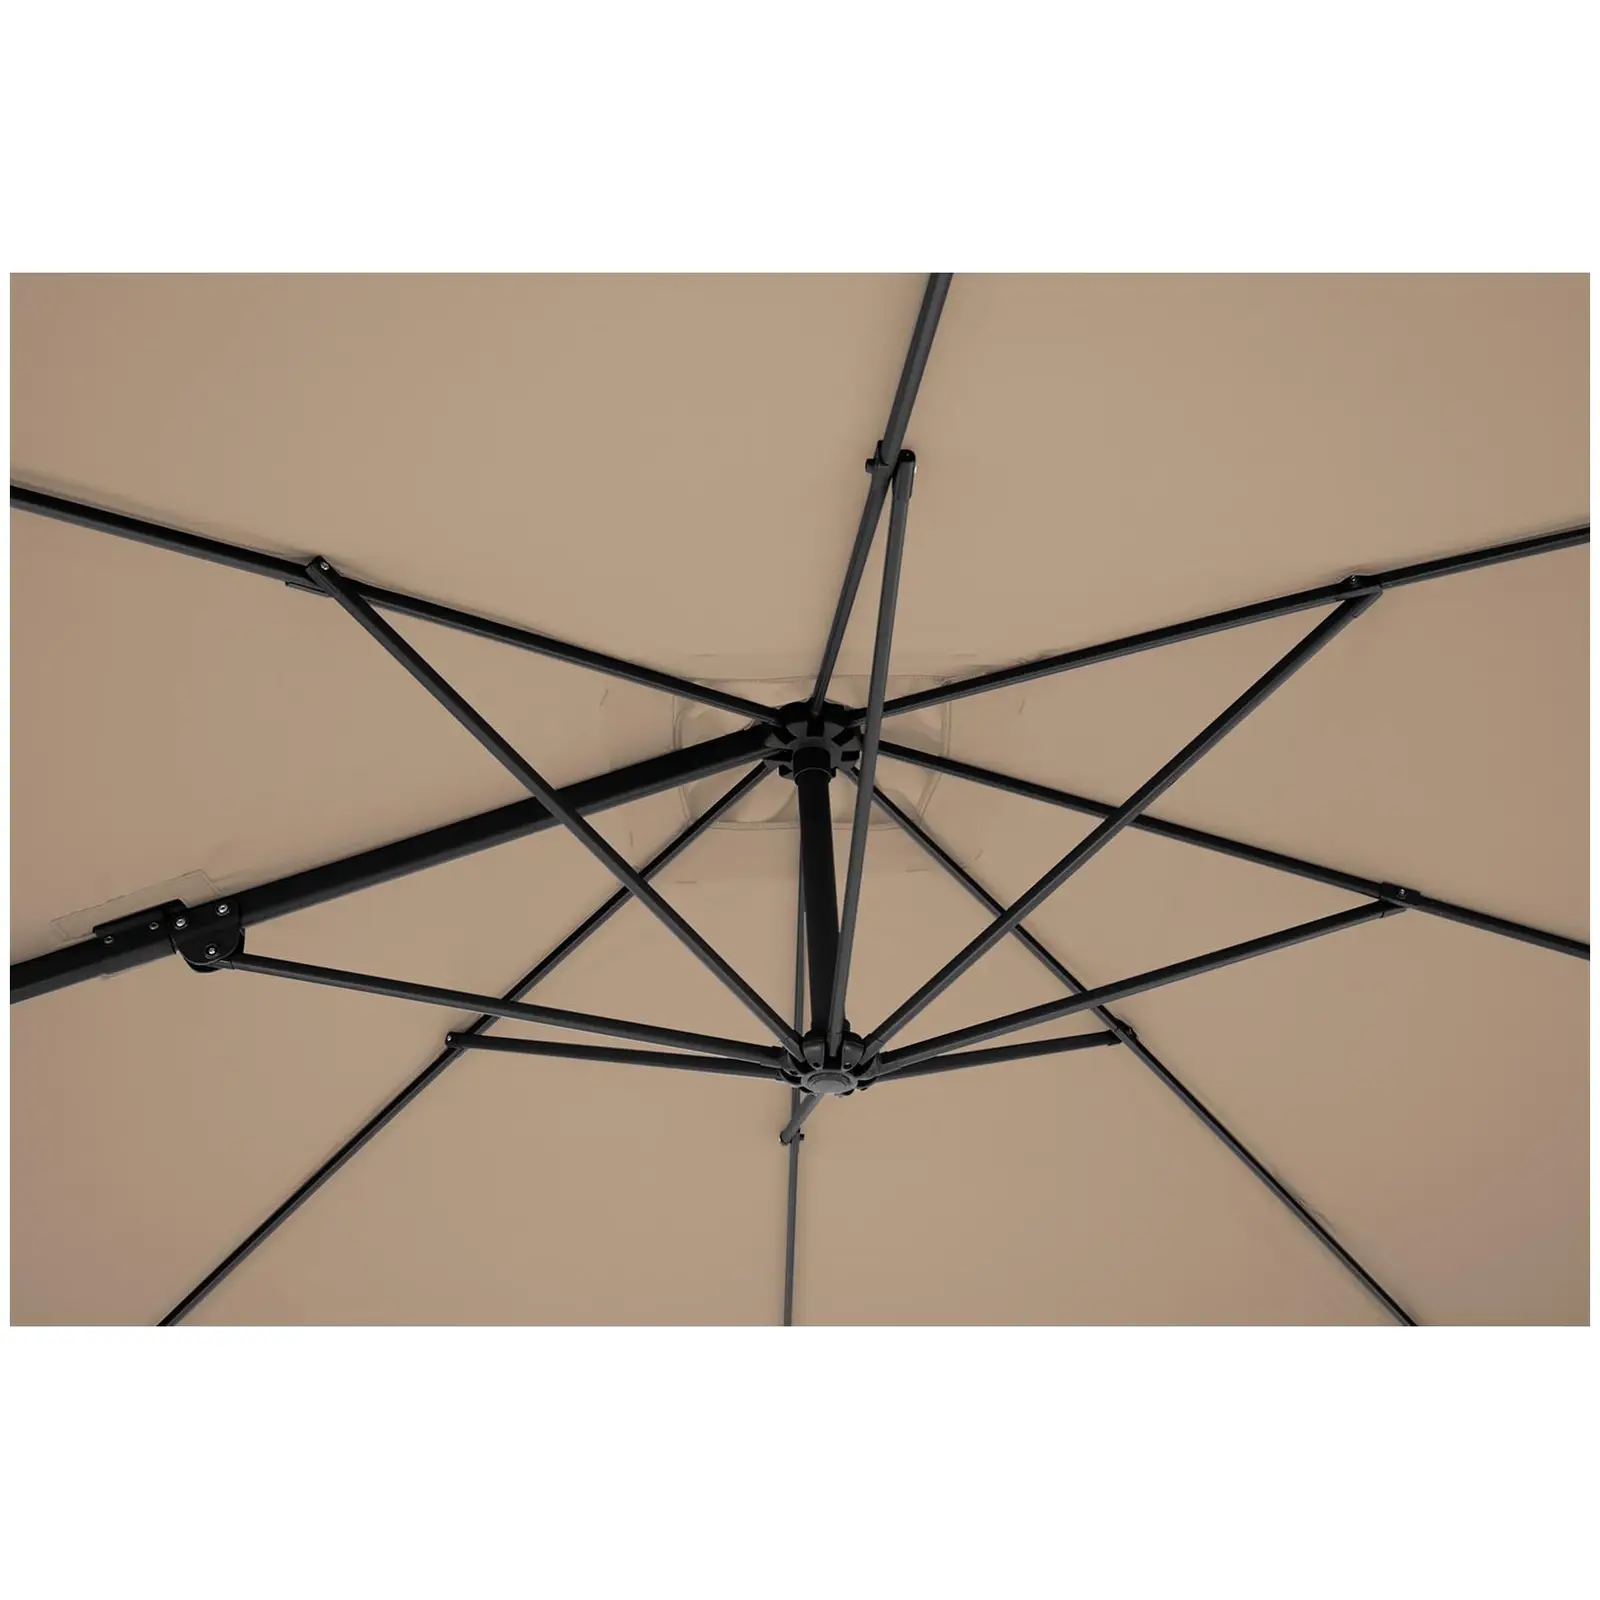 Ampelschirm - Taupe - viereckig - 250 x 250 cm - neig- und drehbar